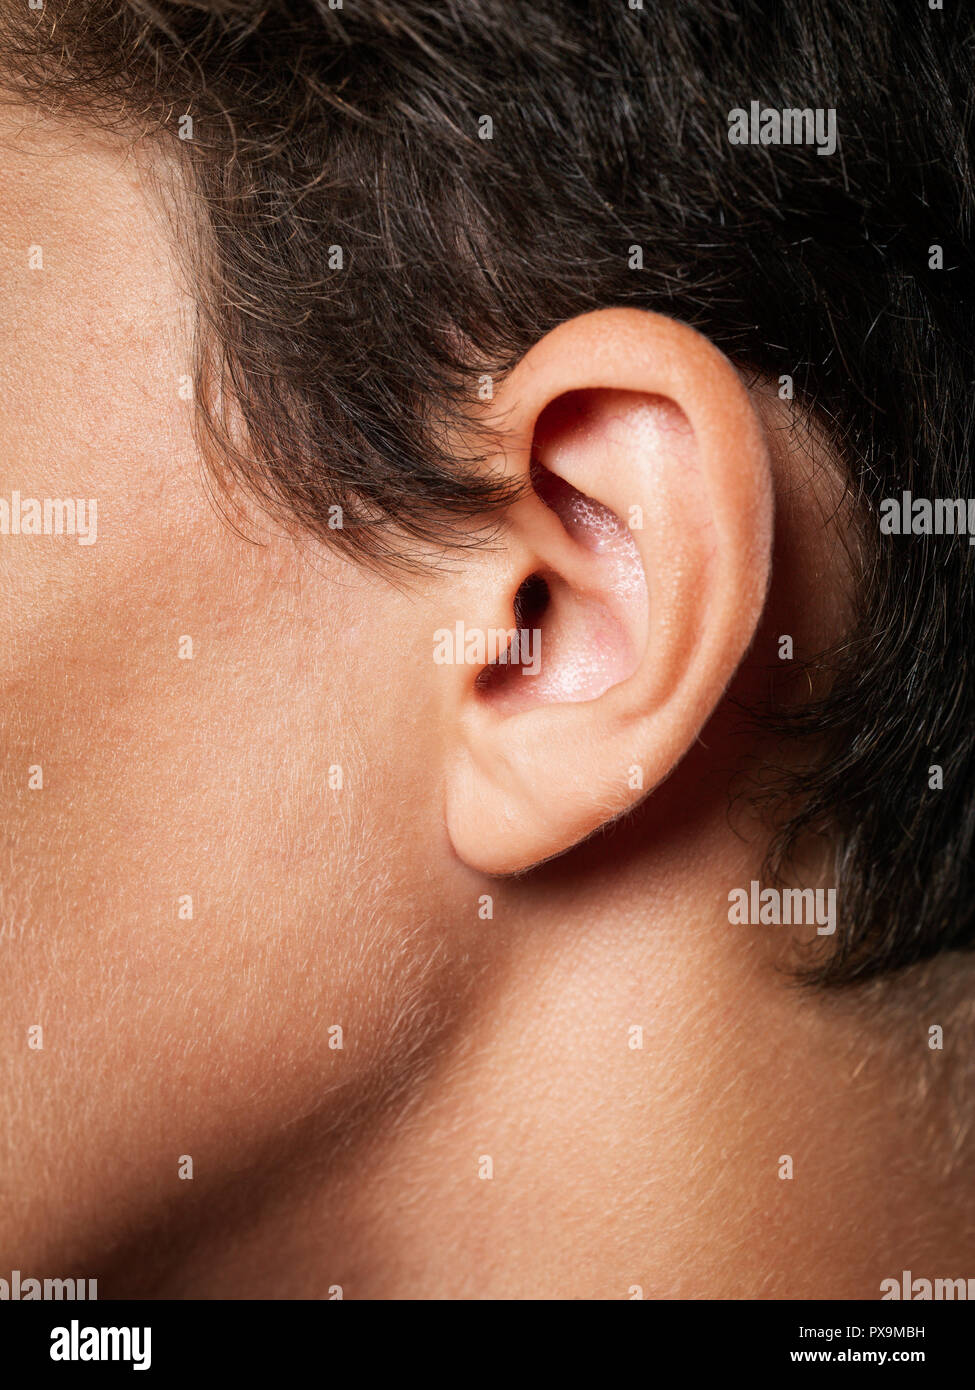 Cerca del oído humano Foto de stock